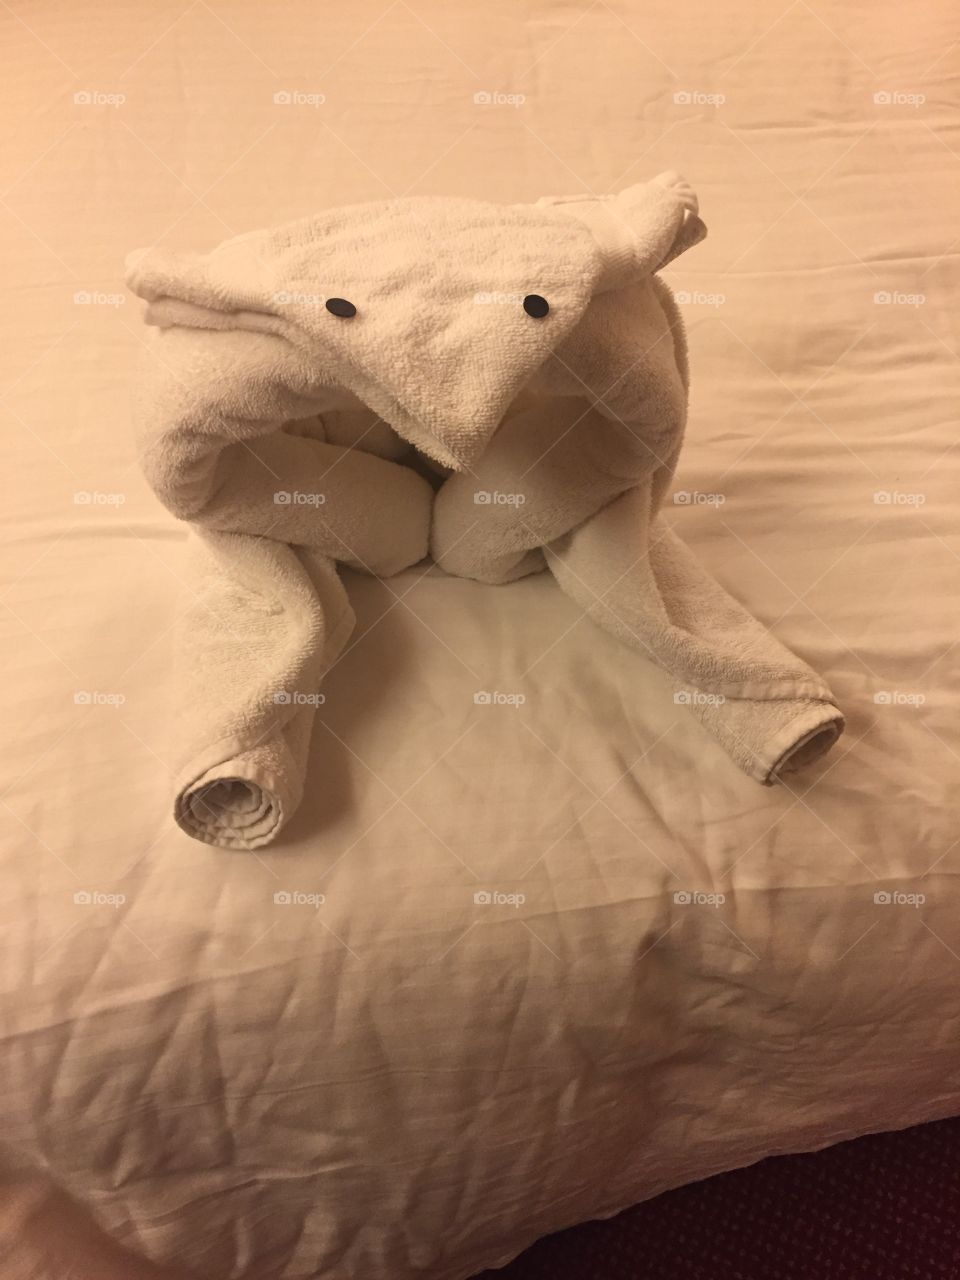 A towel folded sheep